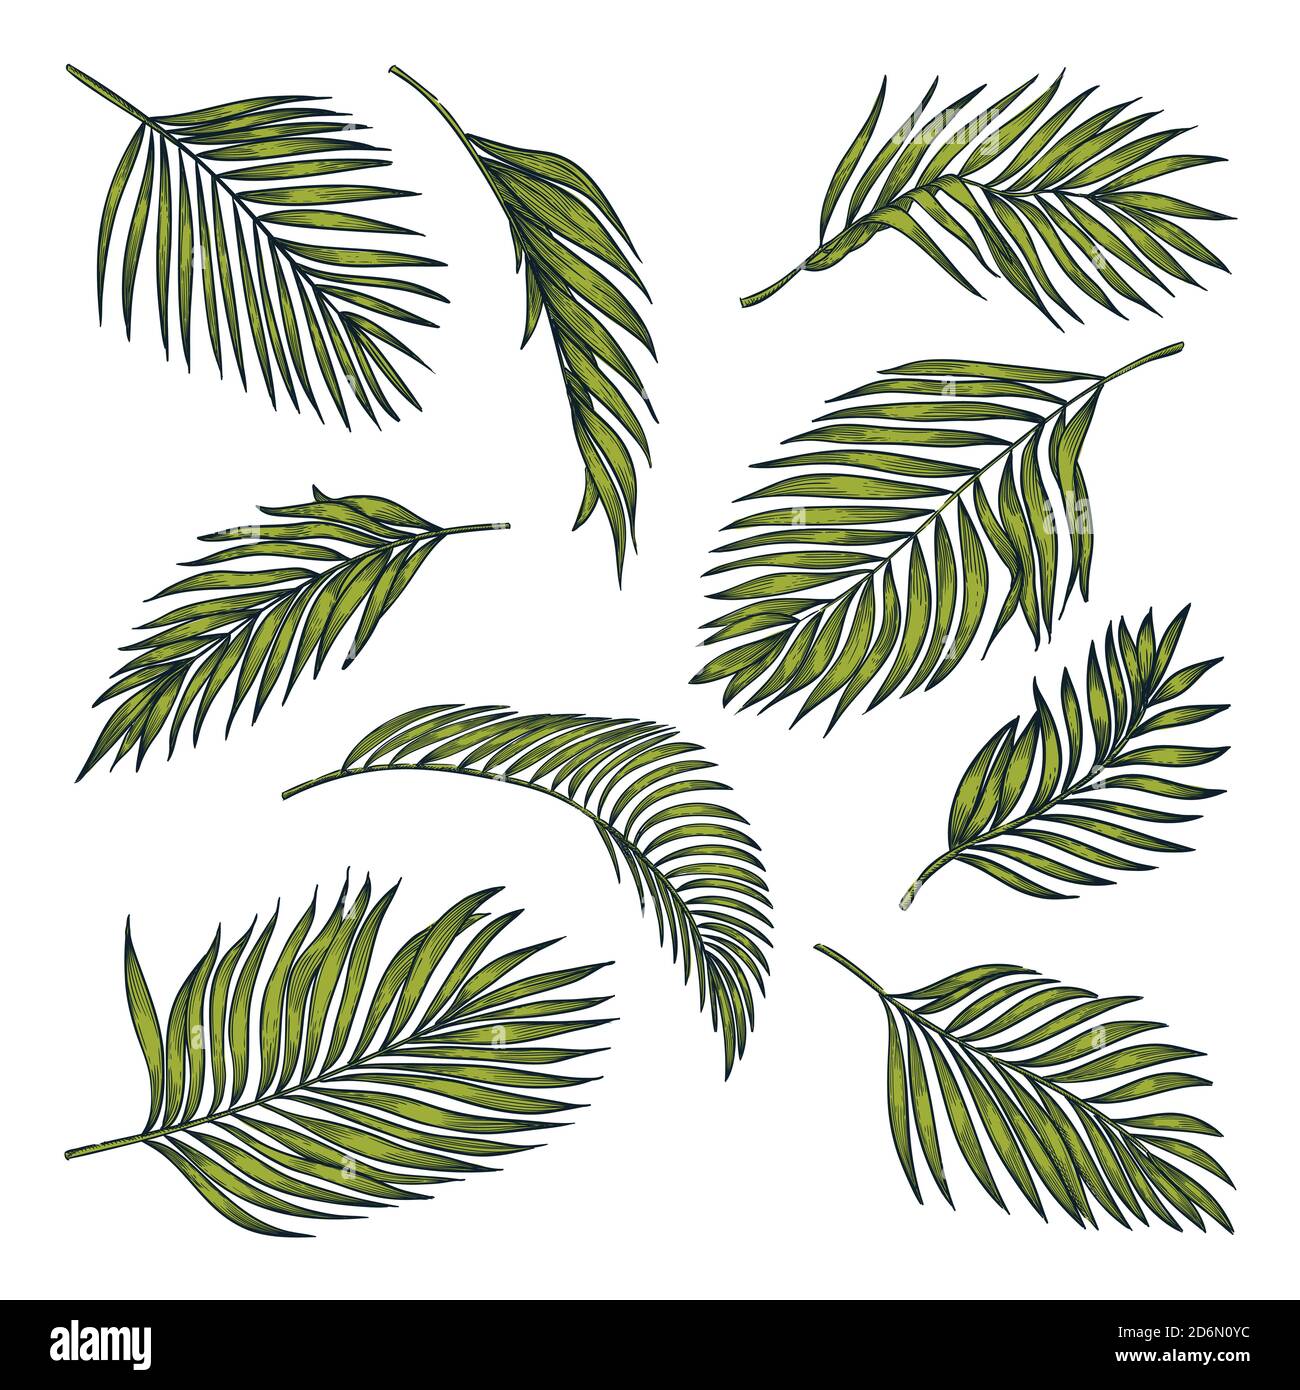 Hojas de coco tropical, aisladas sobre fondo blanco. Ilustración de croquis de color vectorial. Elementos de diseño floral y de naturaleza tropical dibujado a mano. Ilustración del Vector